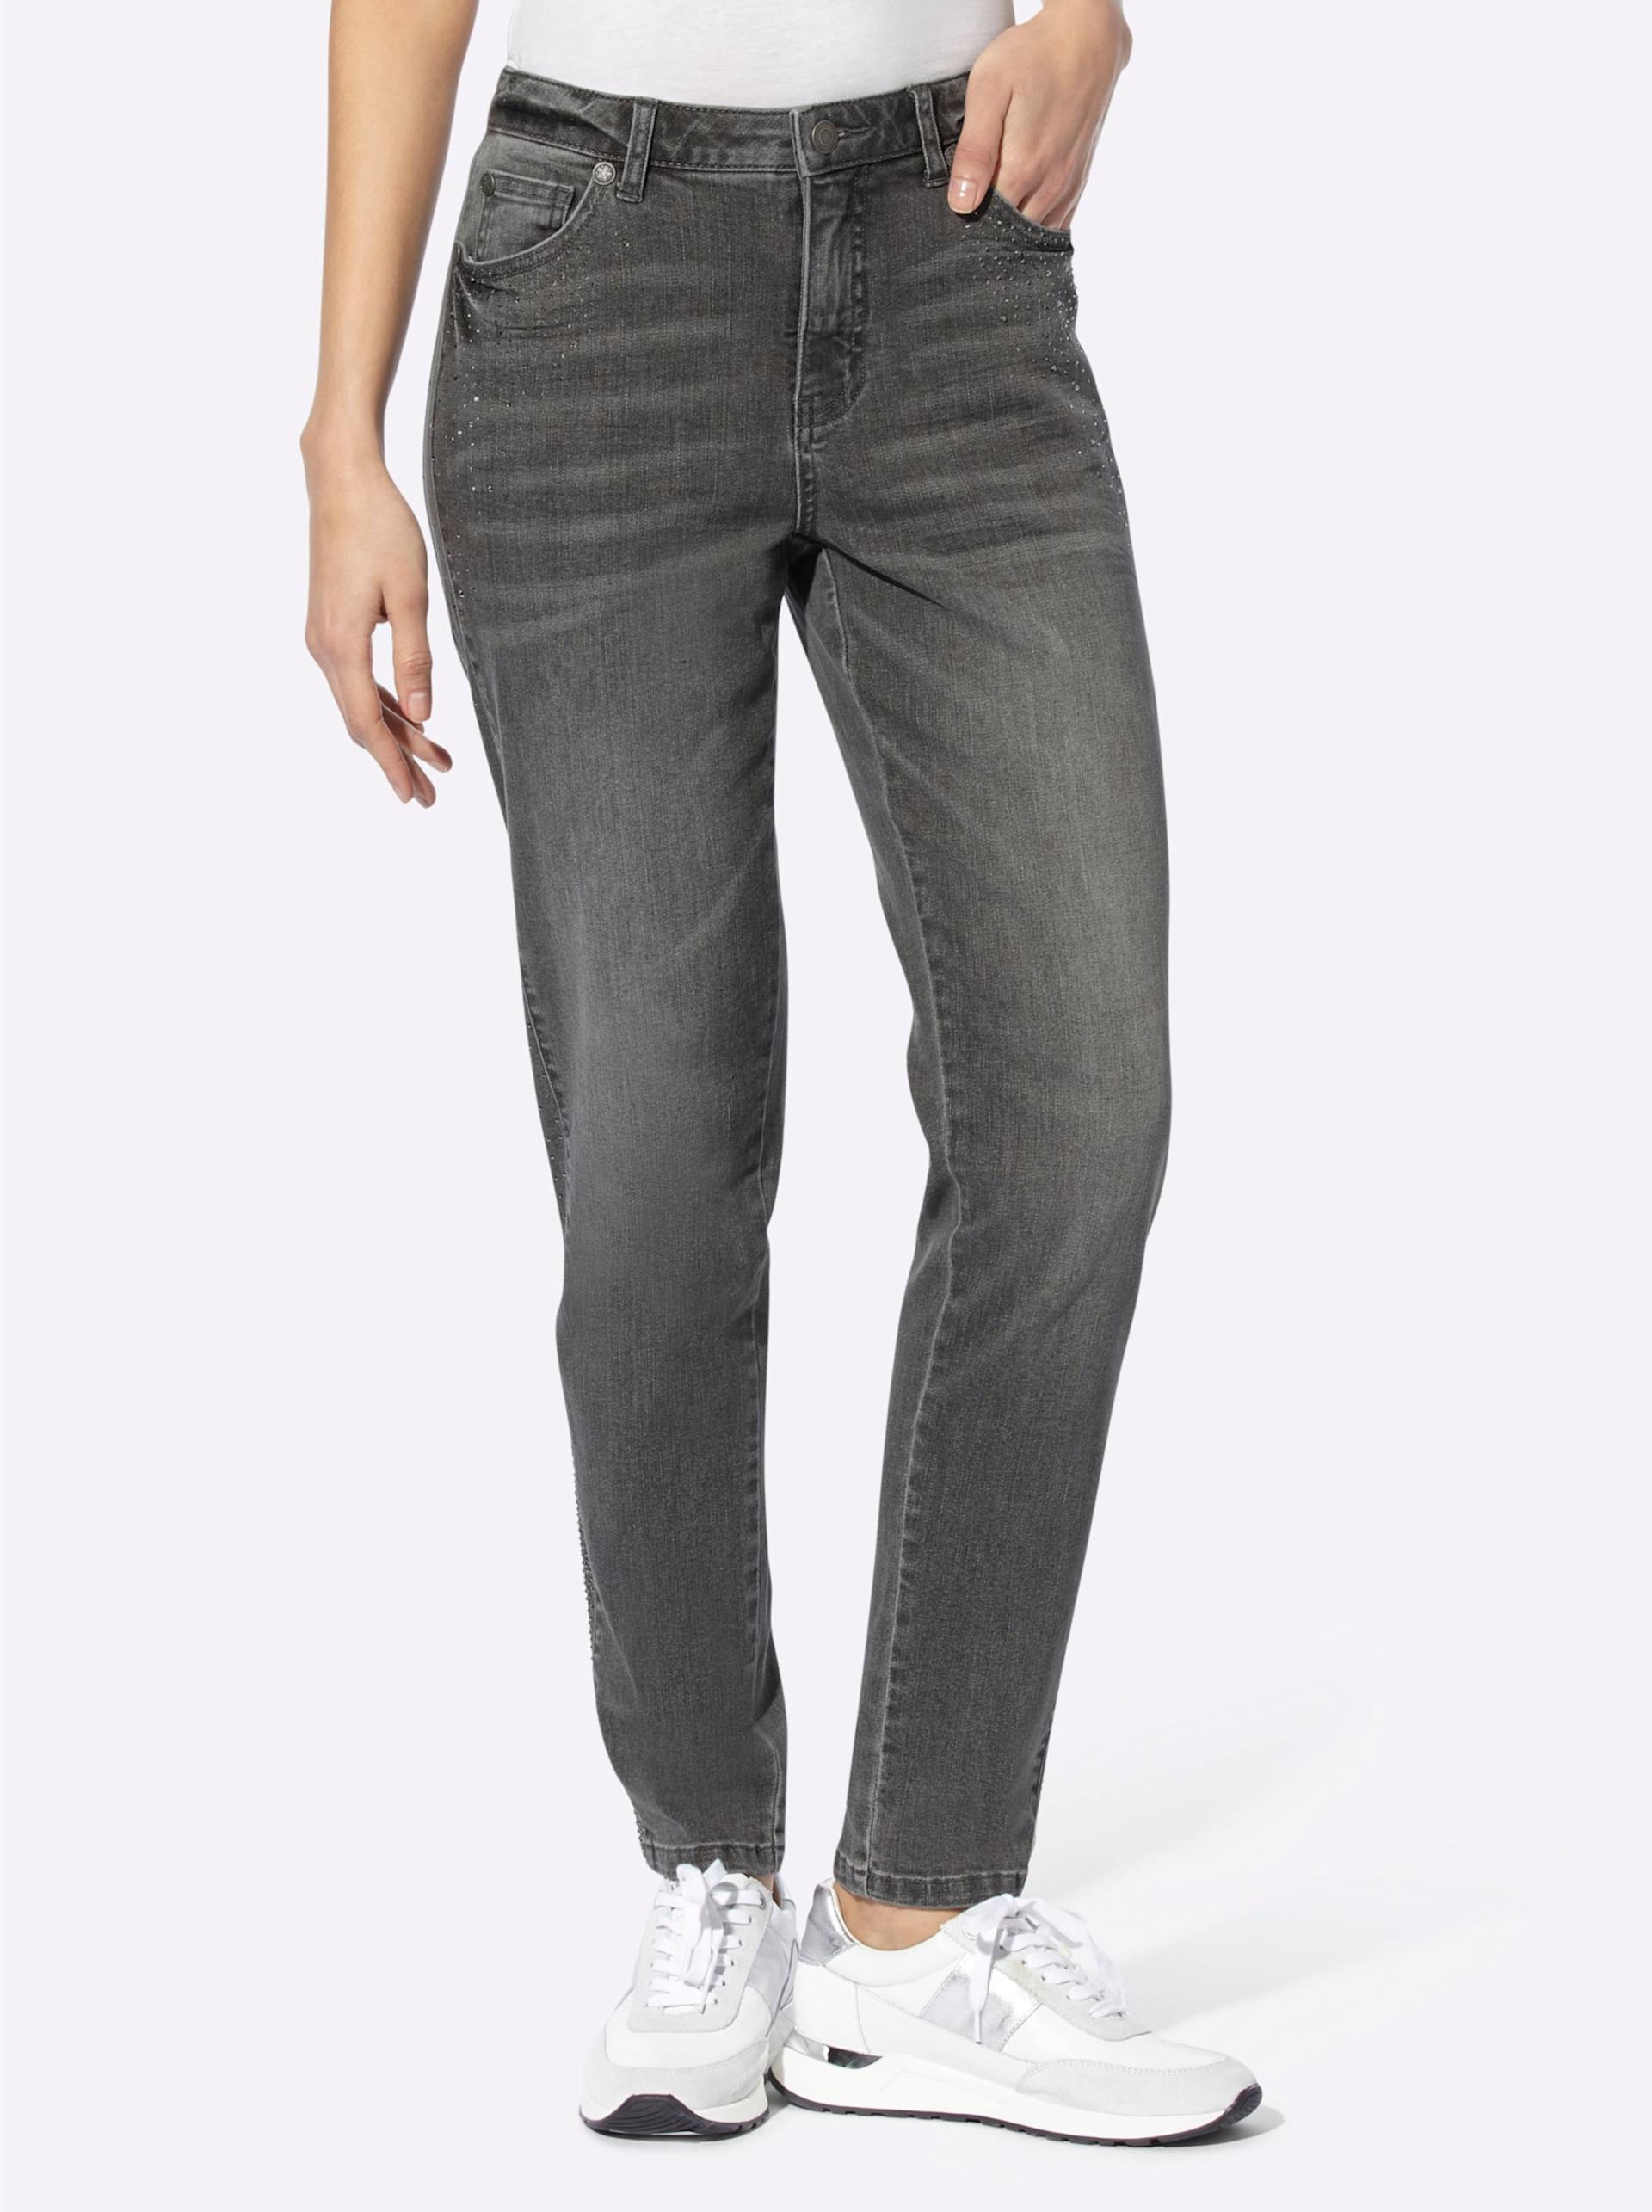 Jeans in stone-grey-denim von heine